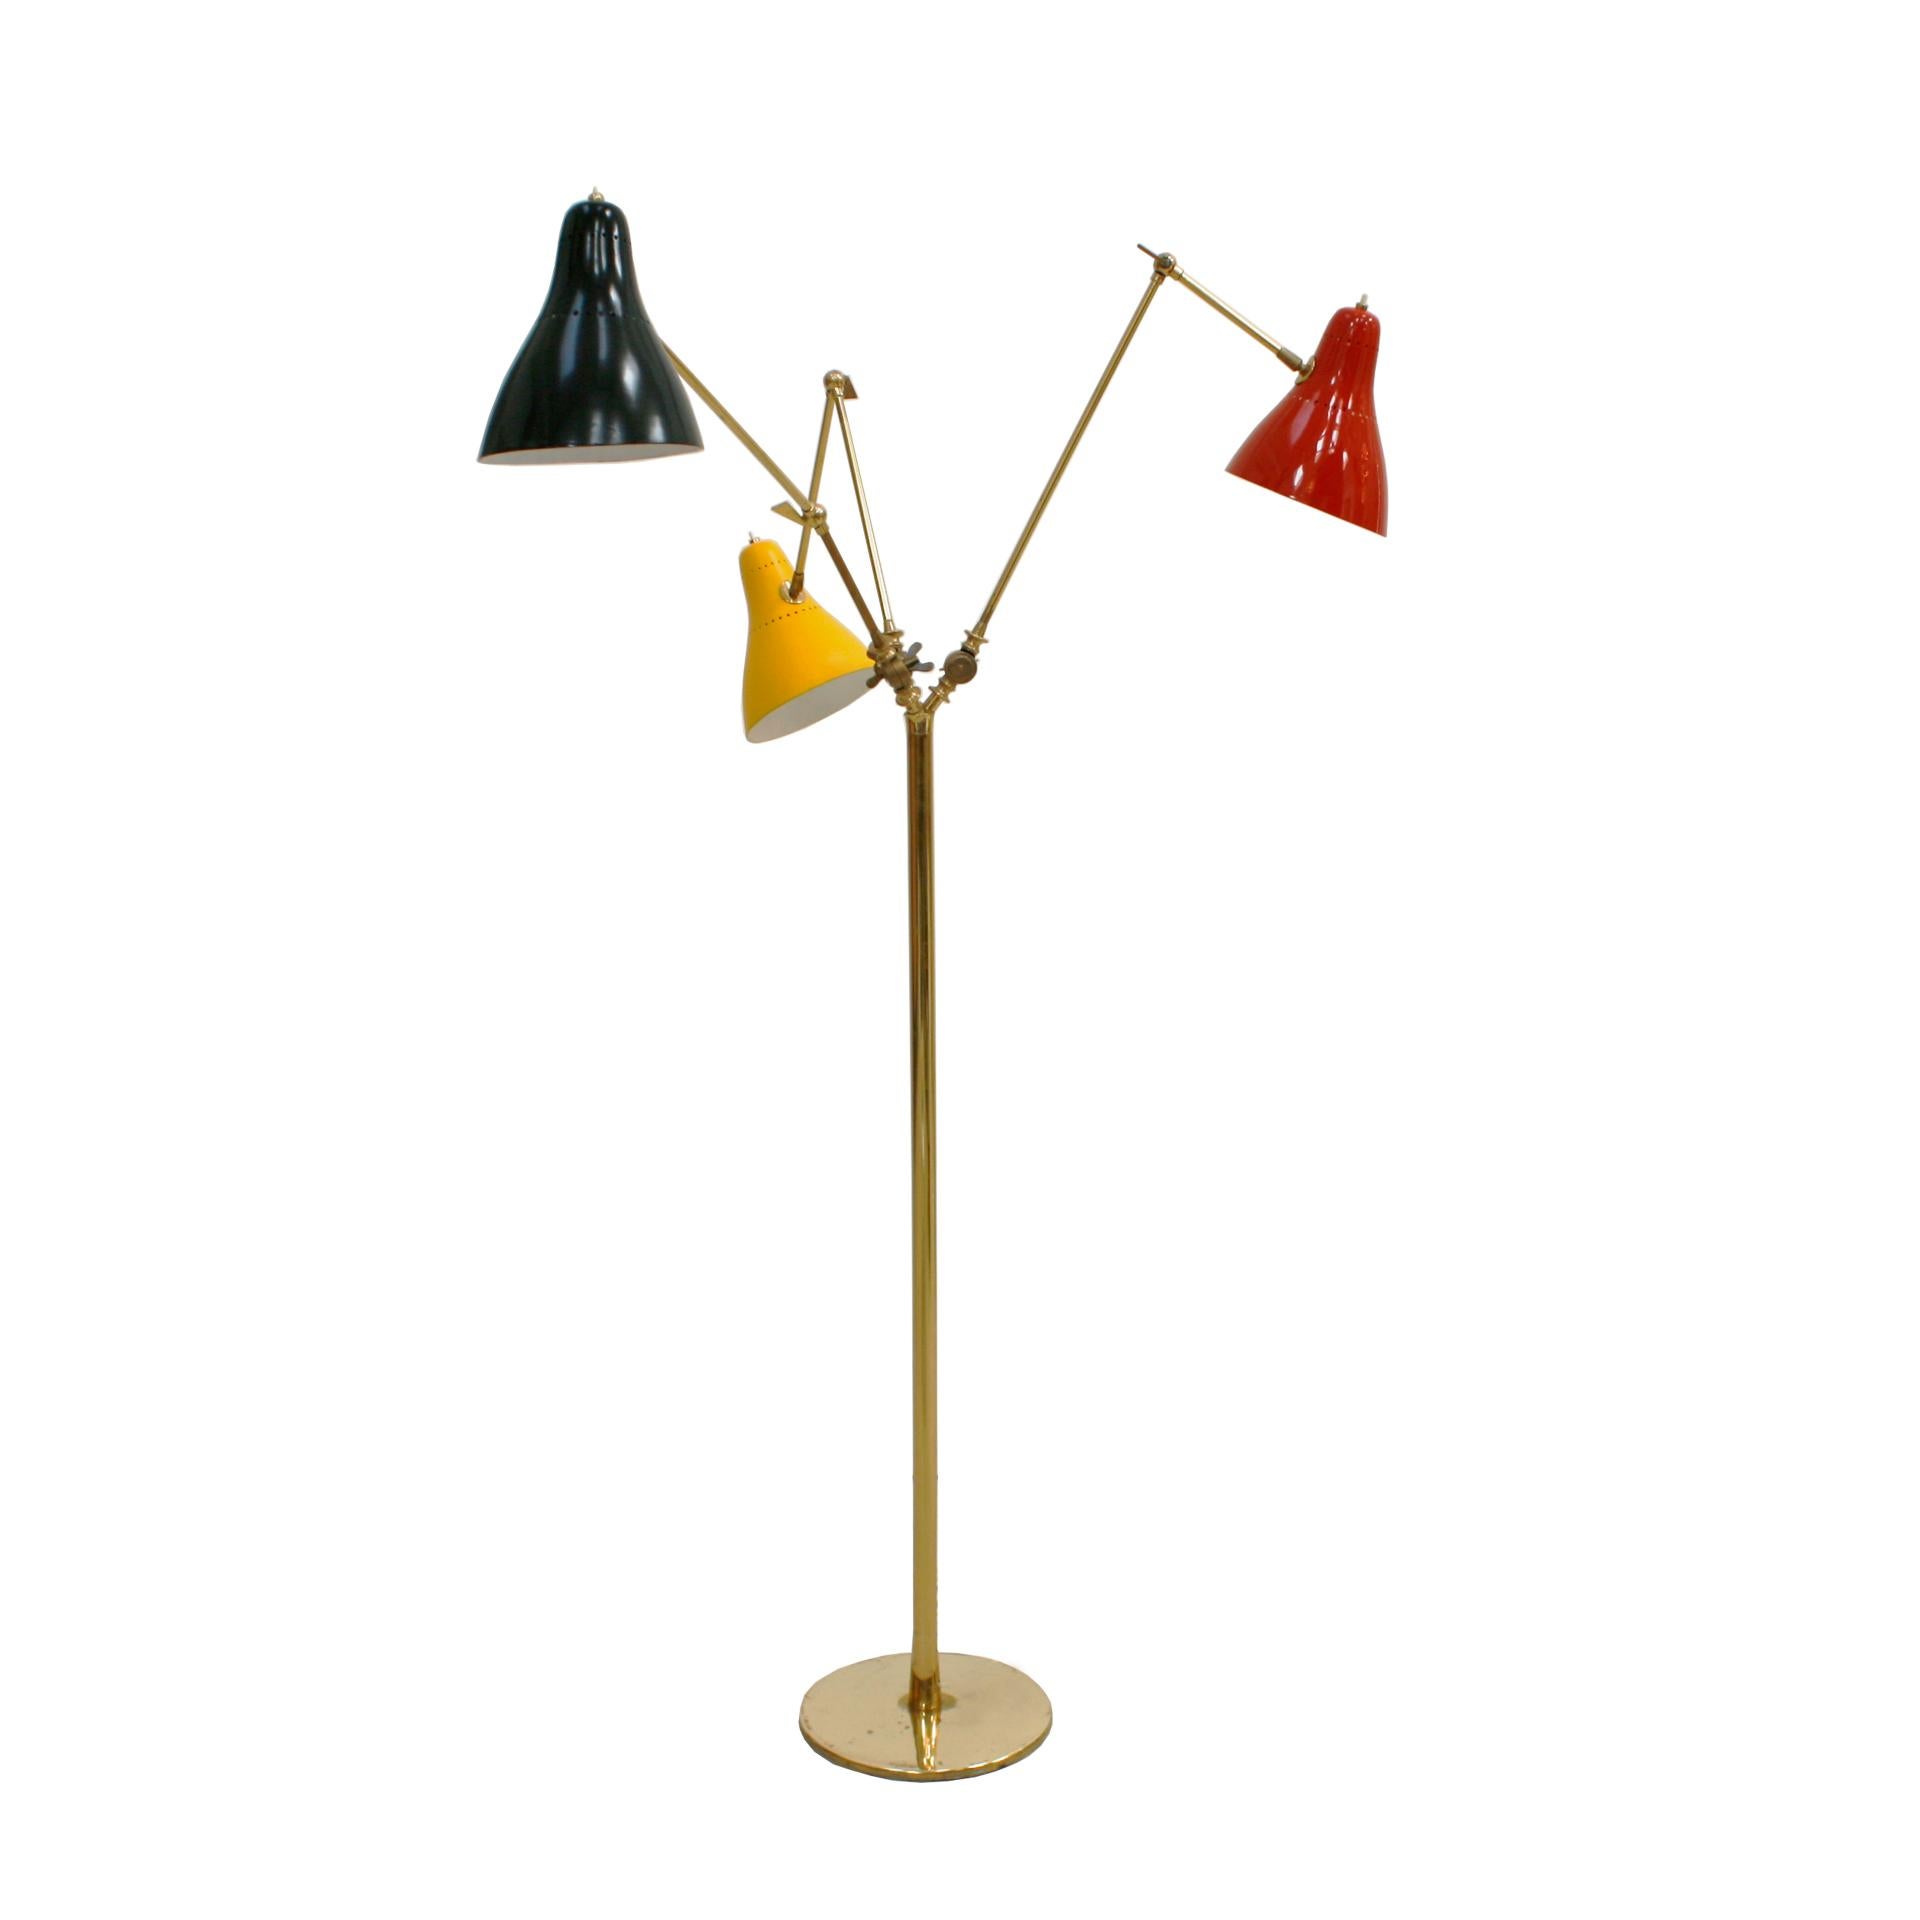 Lampadaire articulé en laiton italien de 1950. Fabriqué avec précision et élégance, ce lampadaire italien est doté de bras réglables rappelant le style triennal emblématique, ce qui vous permet de personnaliser l'éclairage en fonction de vos